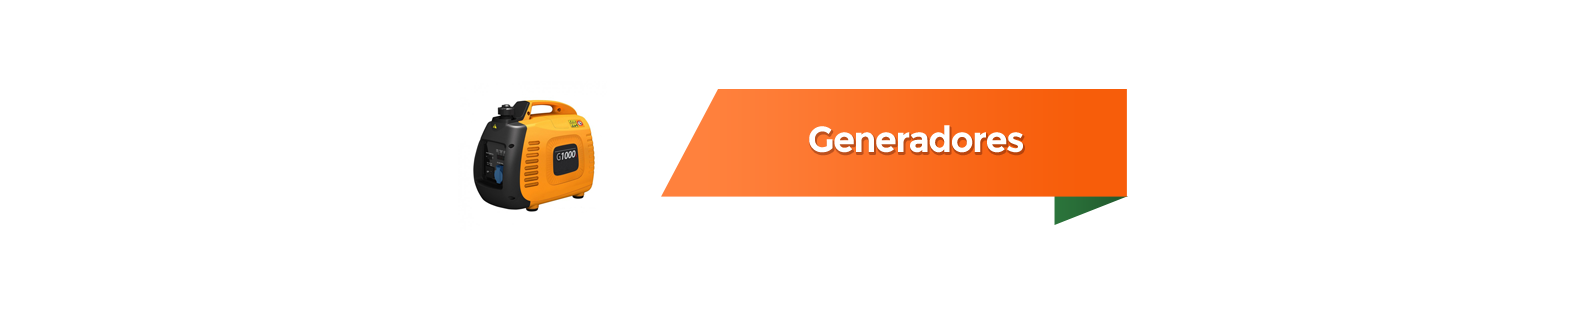 Generatori